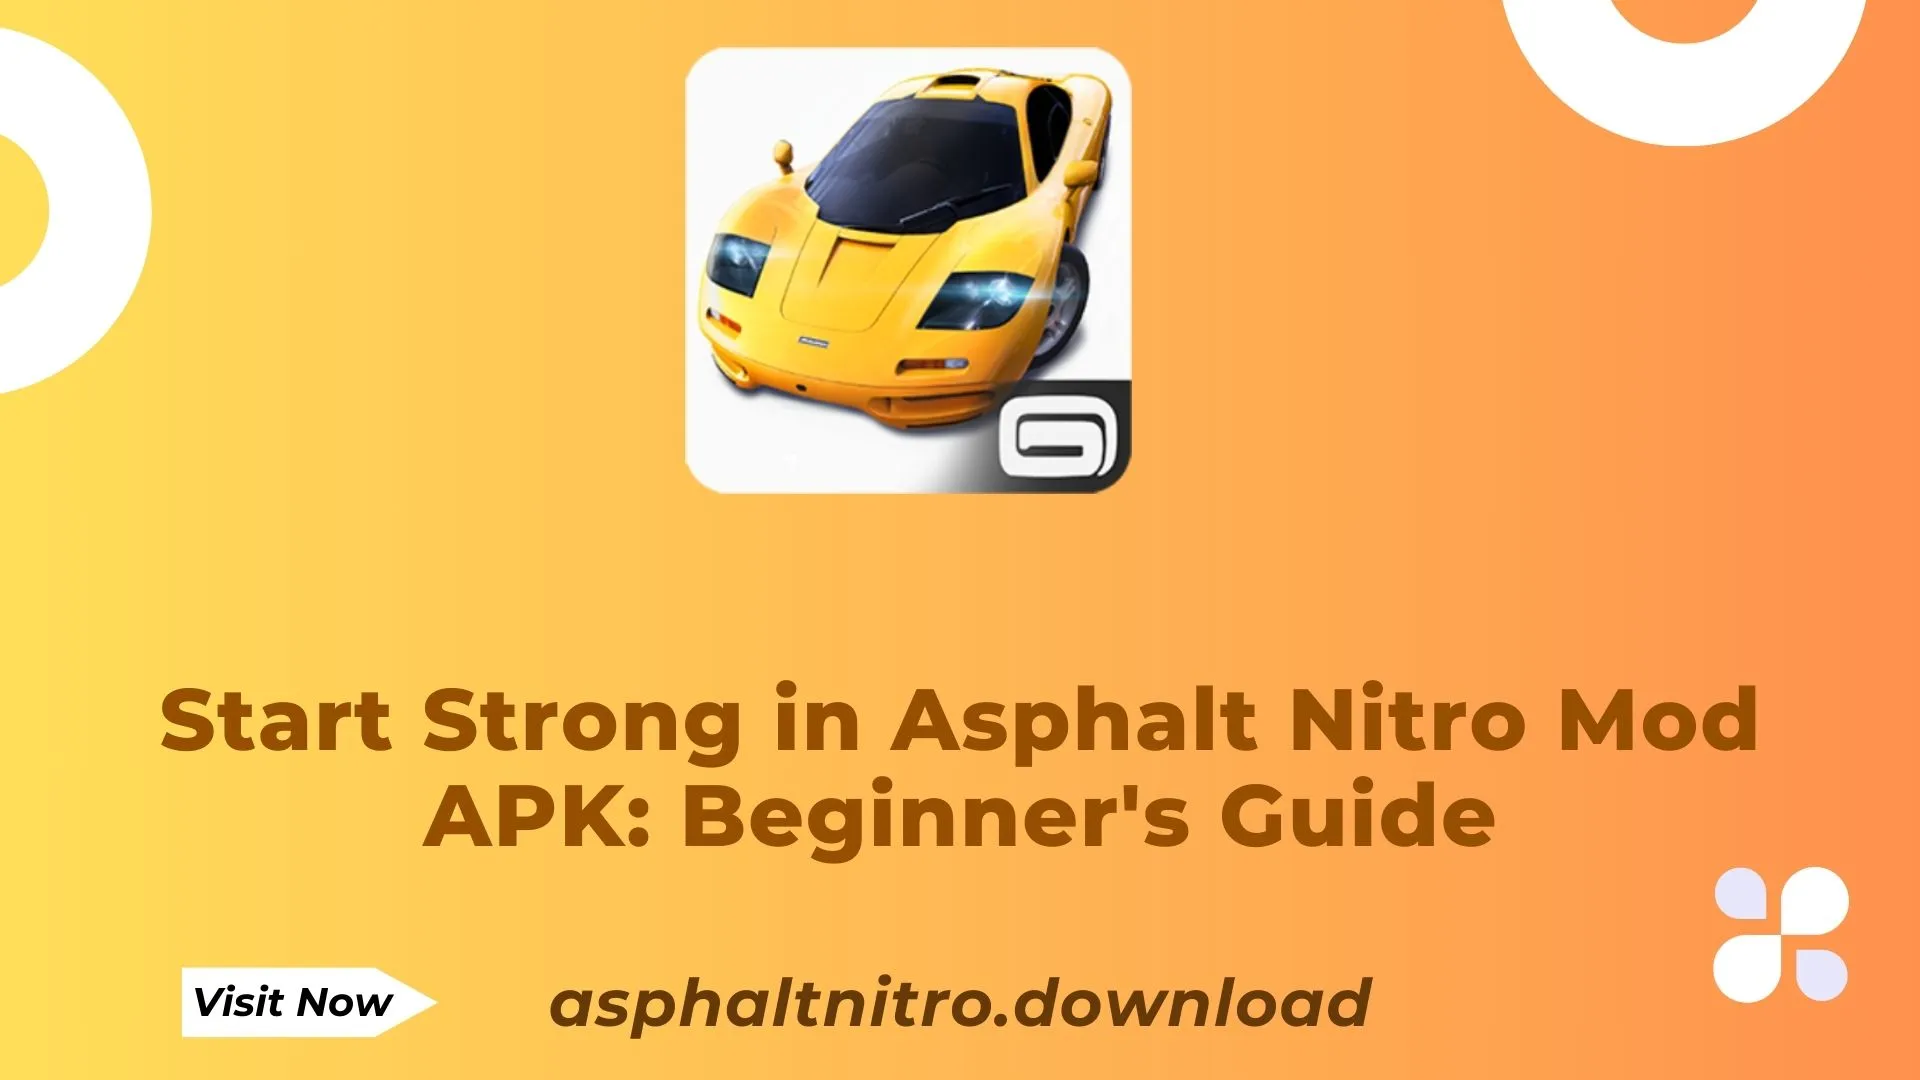 Start Strong in Asphalt Nitro Mod APK: Beginner's Guide